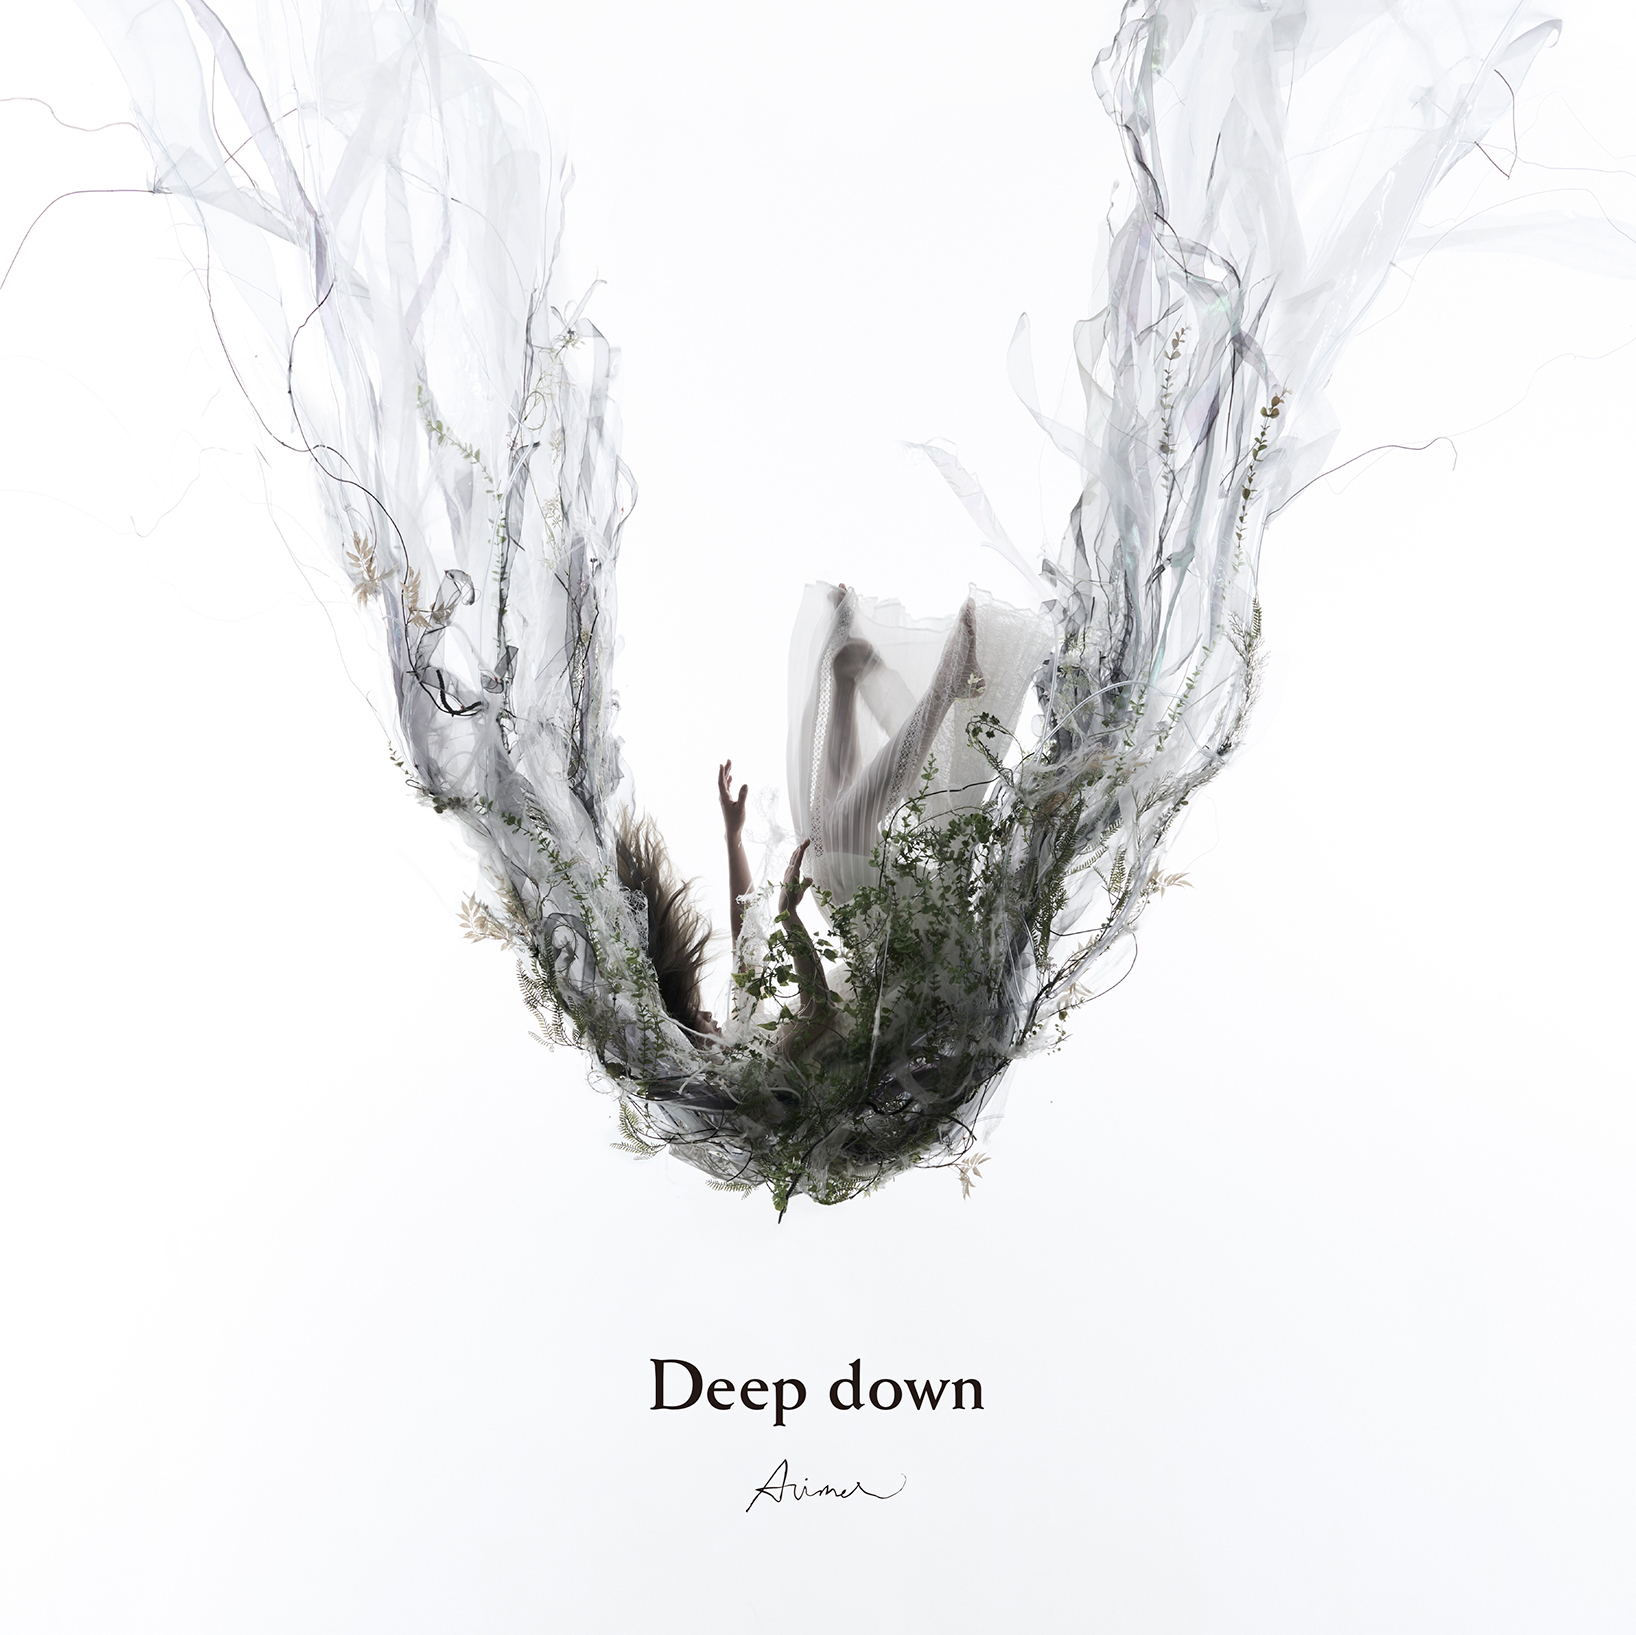 ミニアルバム「Deep down」通常盤